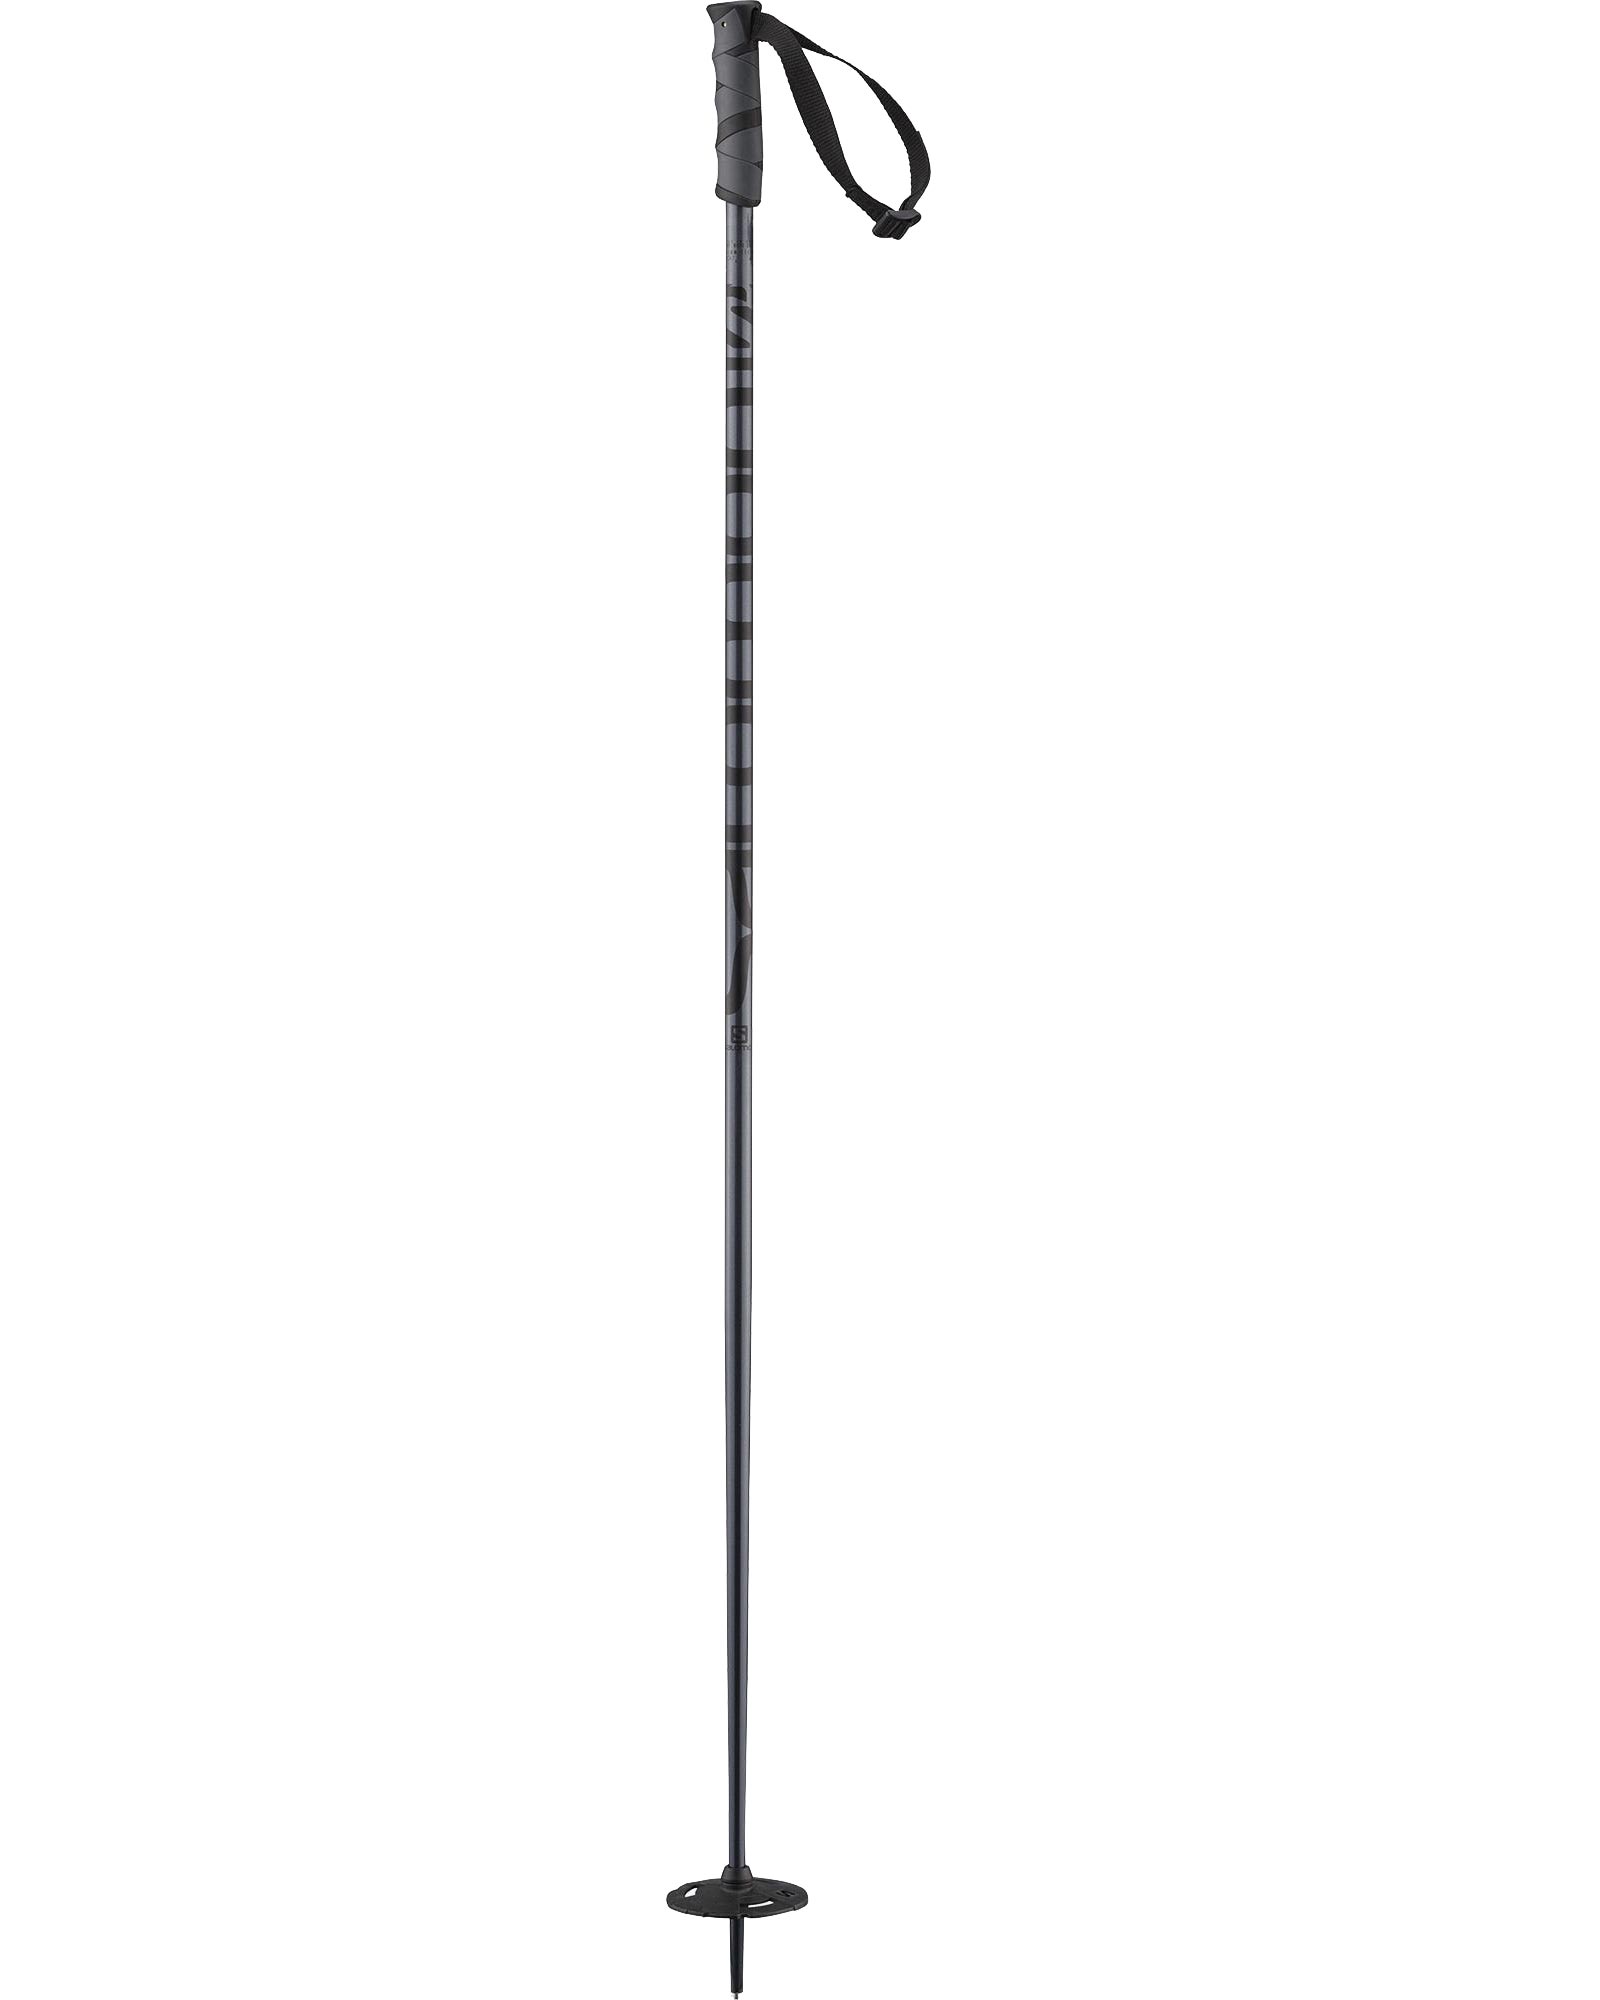 Salomon Hacker Ski Poles - black 130cm